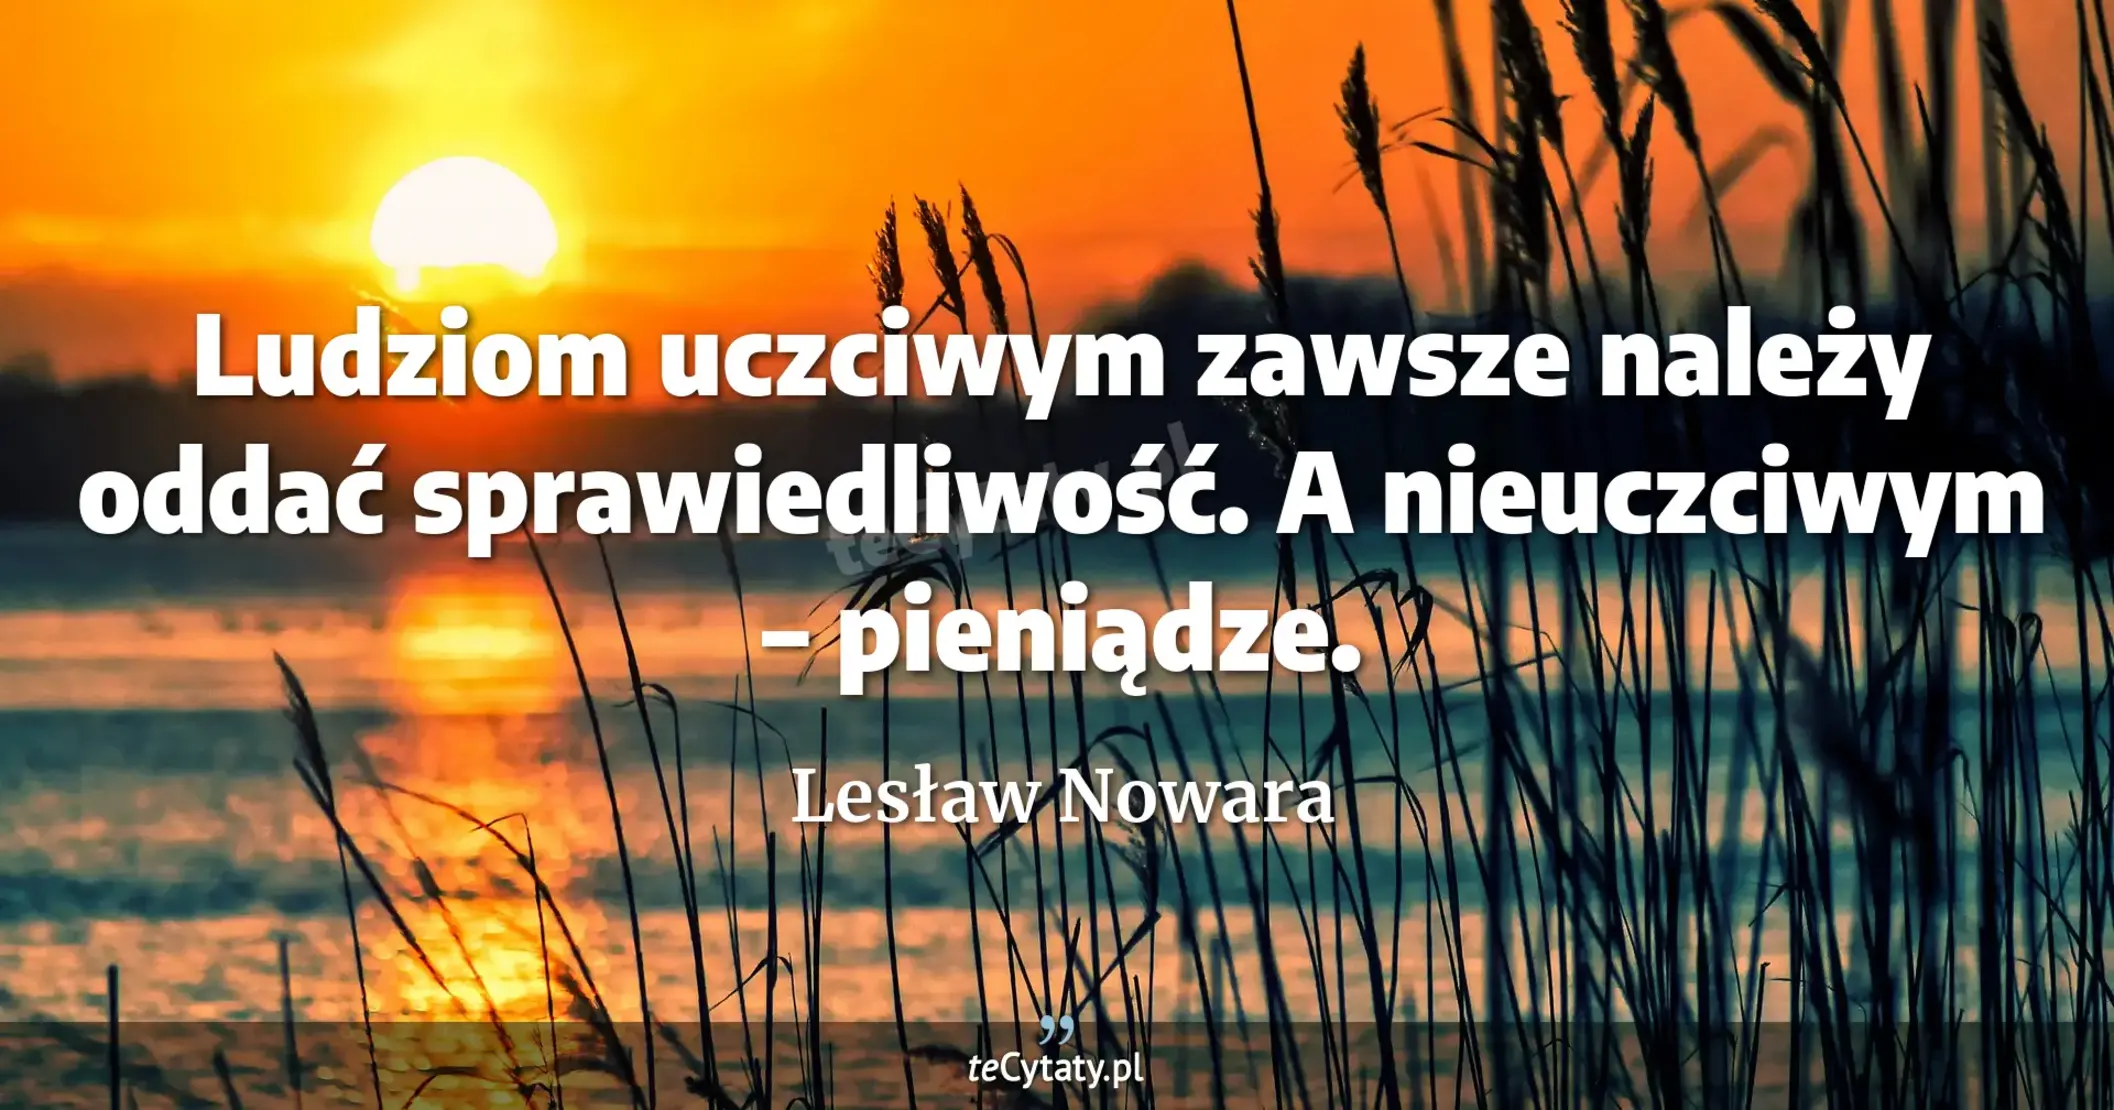 Ludziom uczciwym zawsze należy oddać sprawiedliwość. A nieuczciwym – pieniądze. - Lesław Nowara